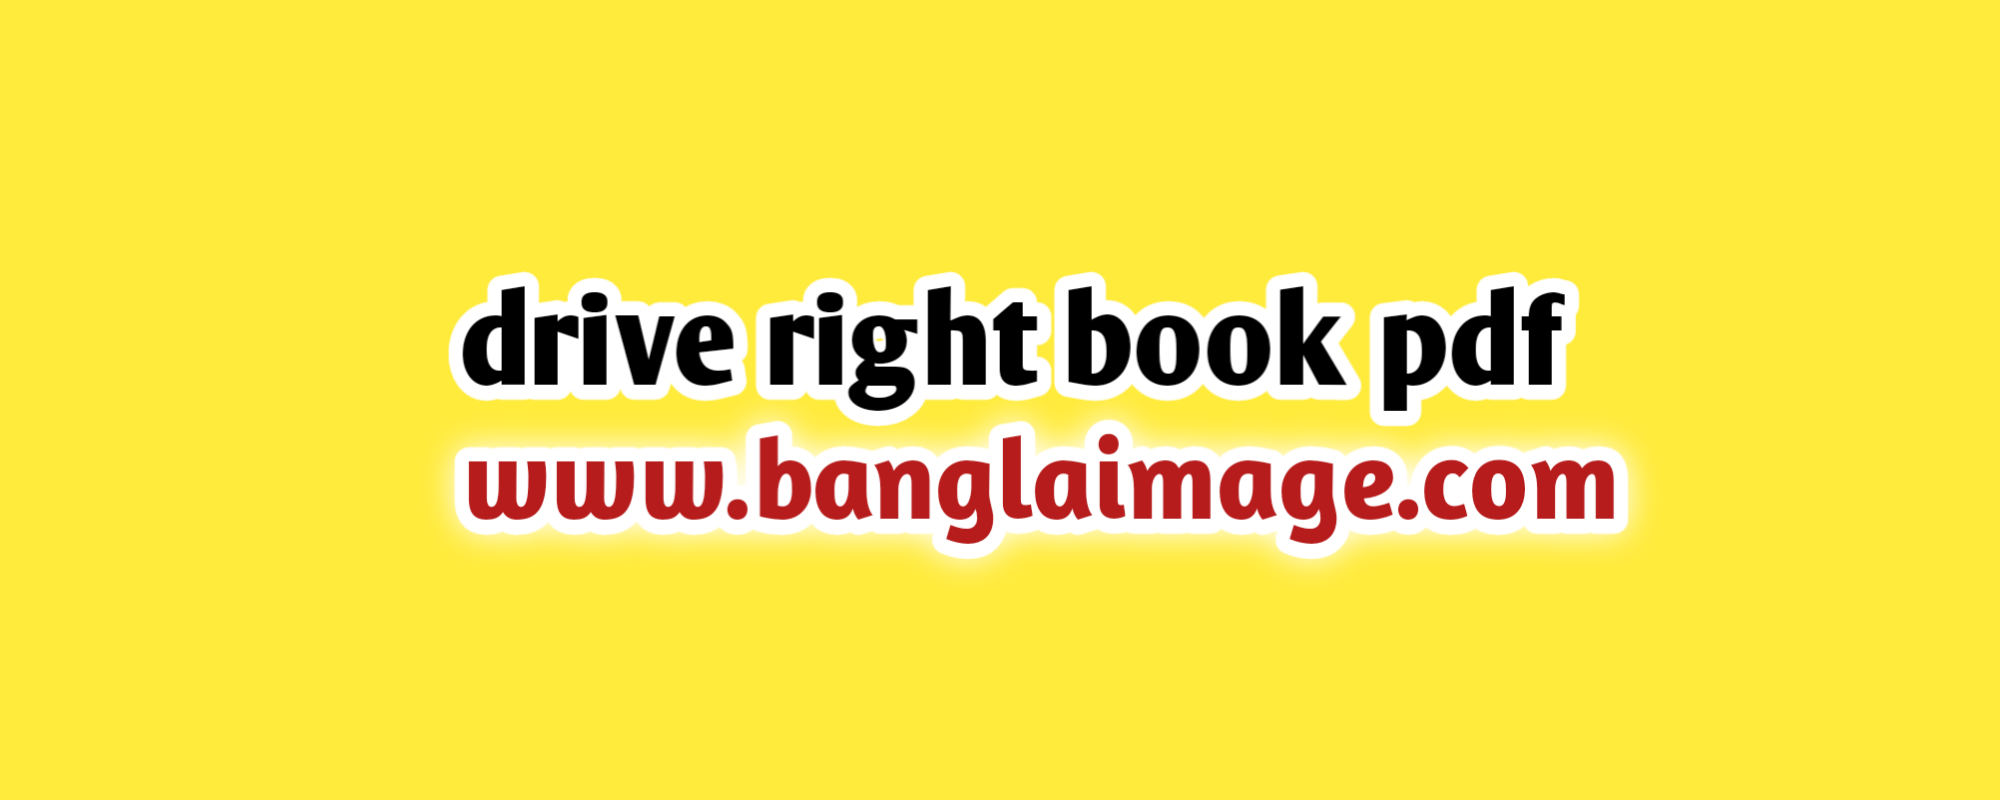 drive right book pdf, drive right book pdf drive file, drive right book pdf now, the drive right book pdf drive file